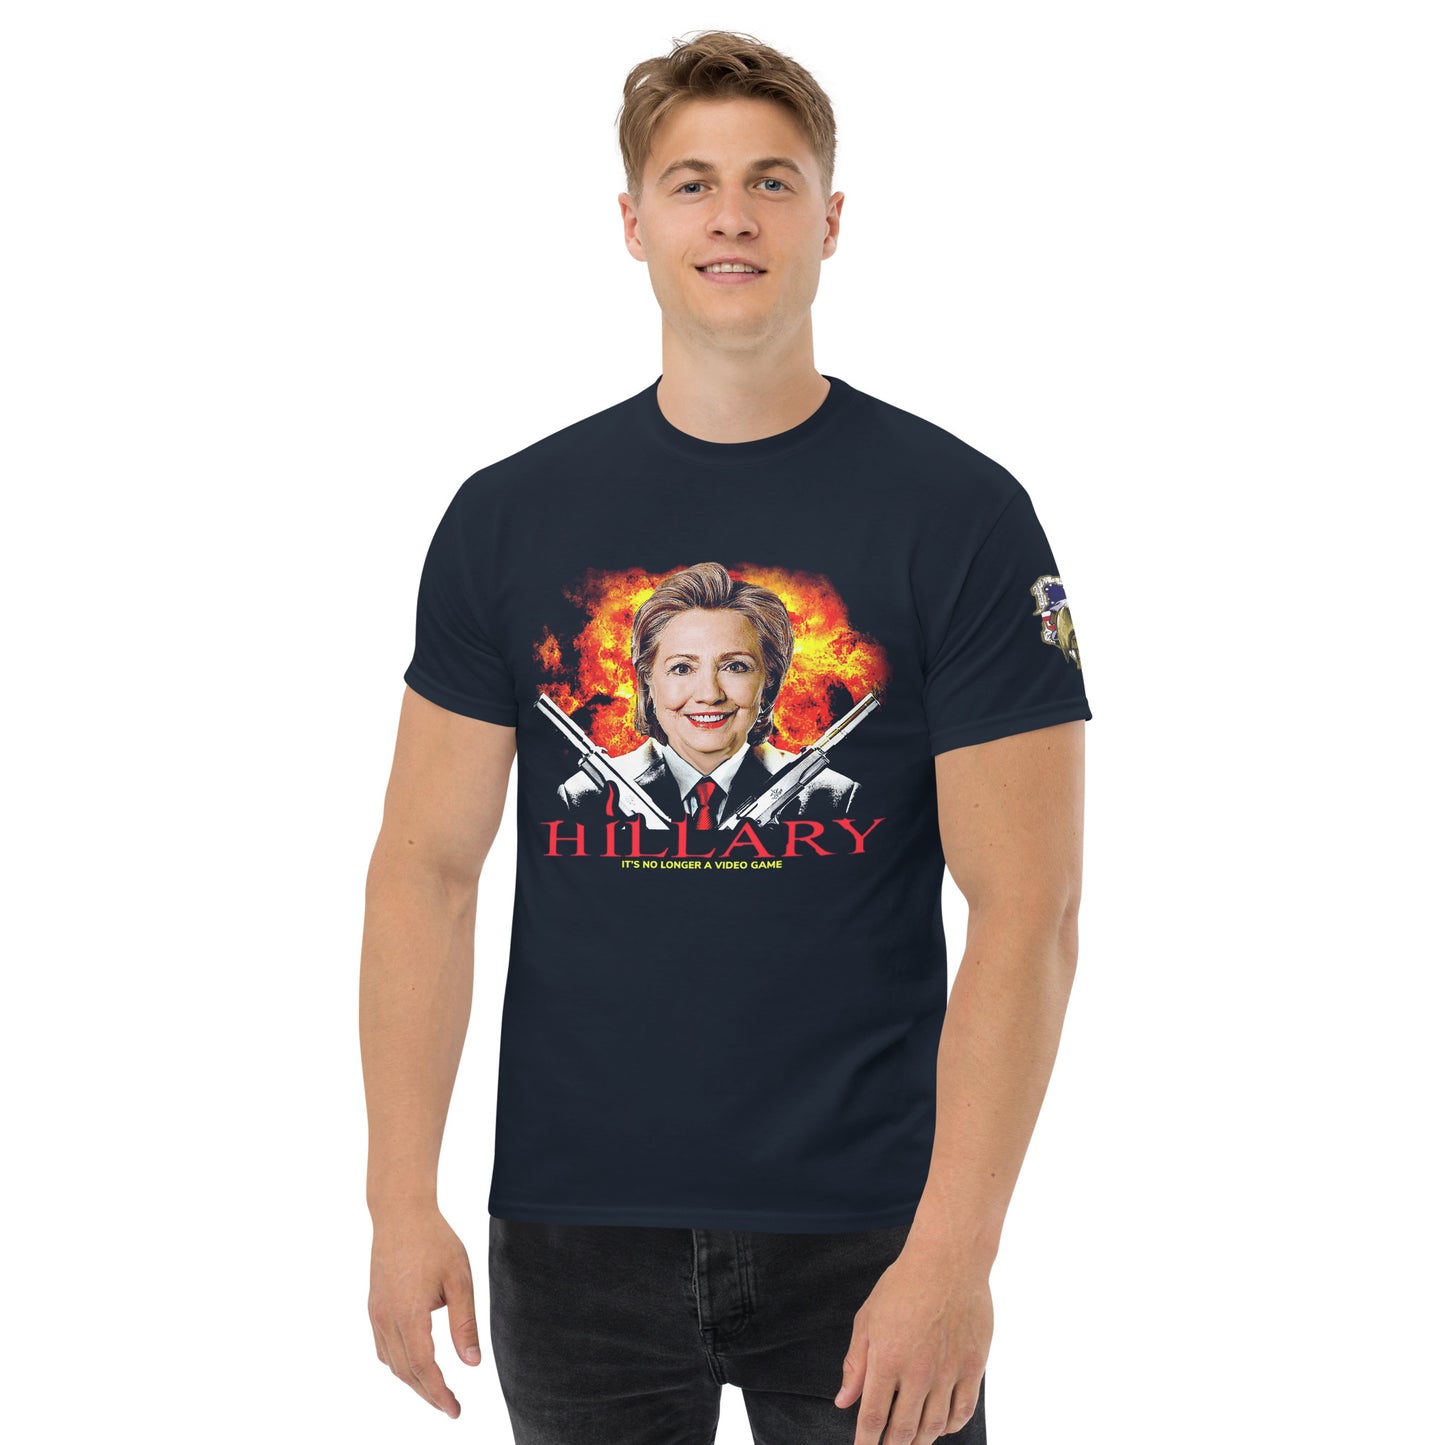 Hillary- HITMAN Video Game Parody